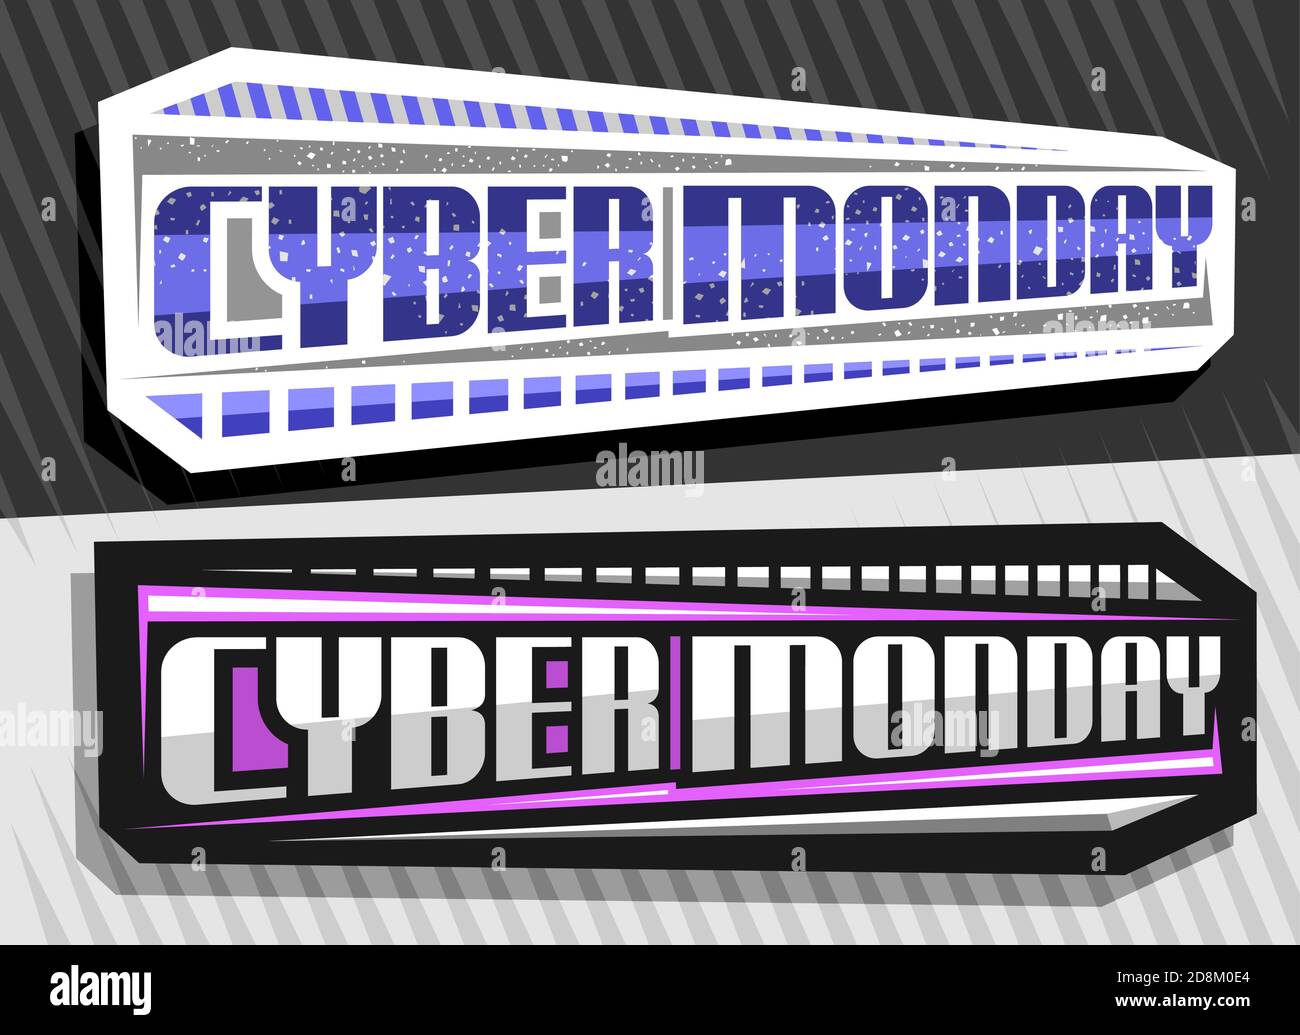 Vektor-Etiketten für Cyber Monday, 2 dekorative horizontale Schilder mit einzigartigem Schriftzug für blaue Wörter Cyber monday, abstraktes modernes Konzept für spe Stock Vektor